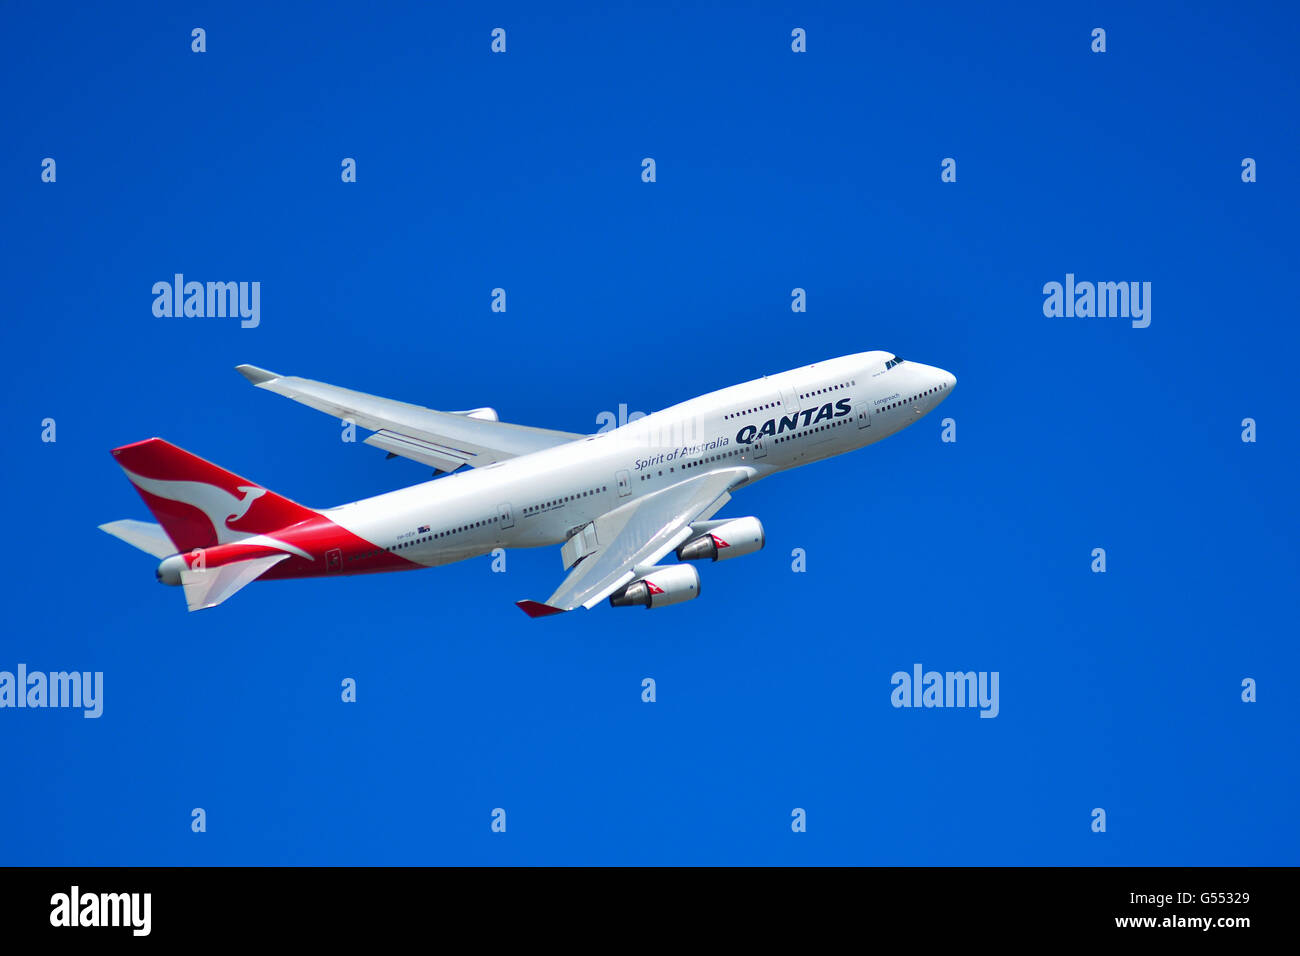 Ein Flugzeug von Qantas, der nationalen Fluggesellschaft Australiens Stockfoto